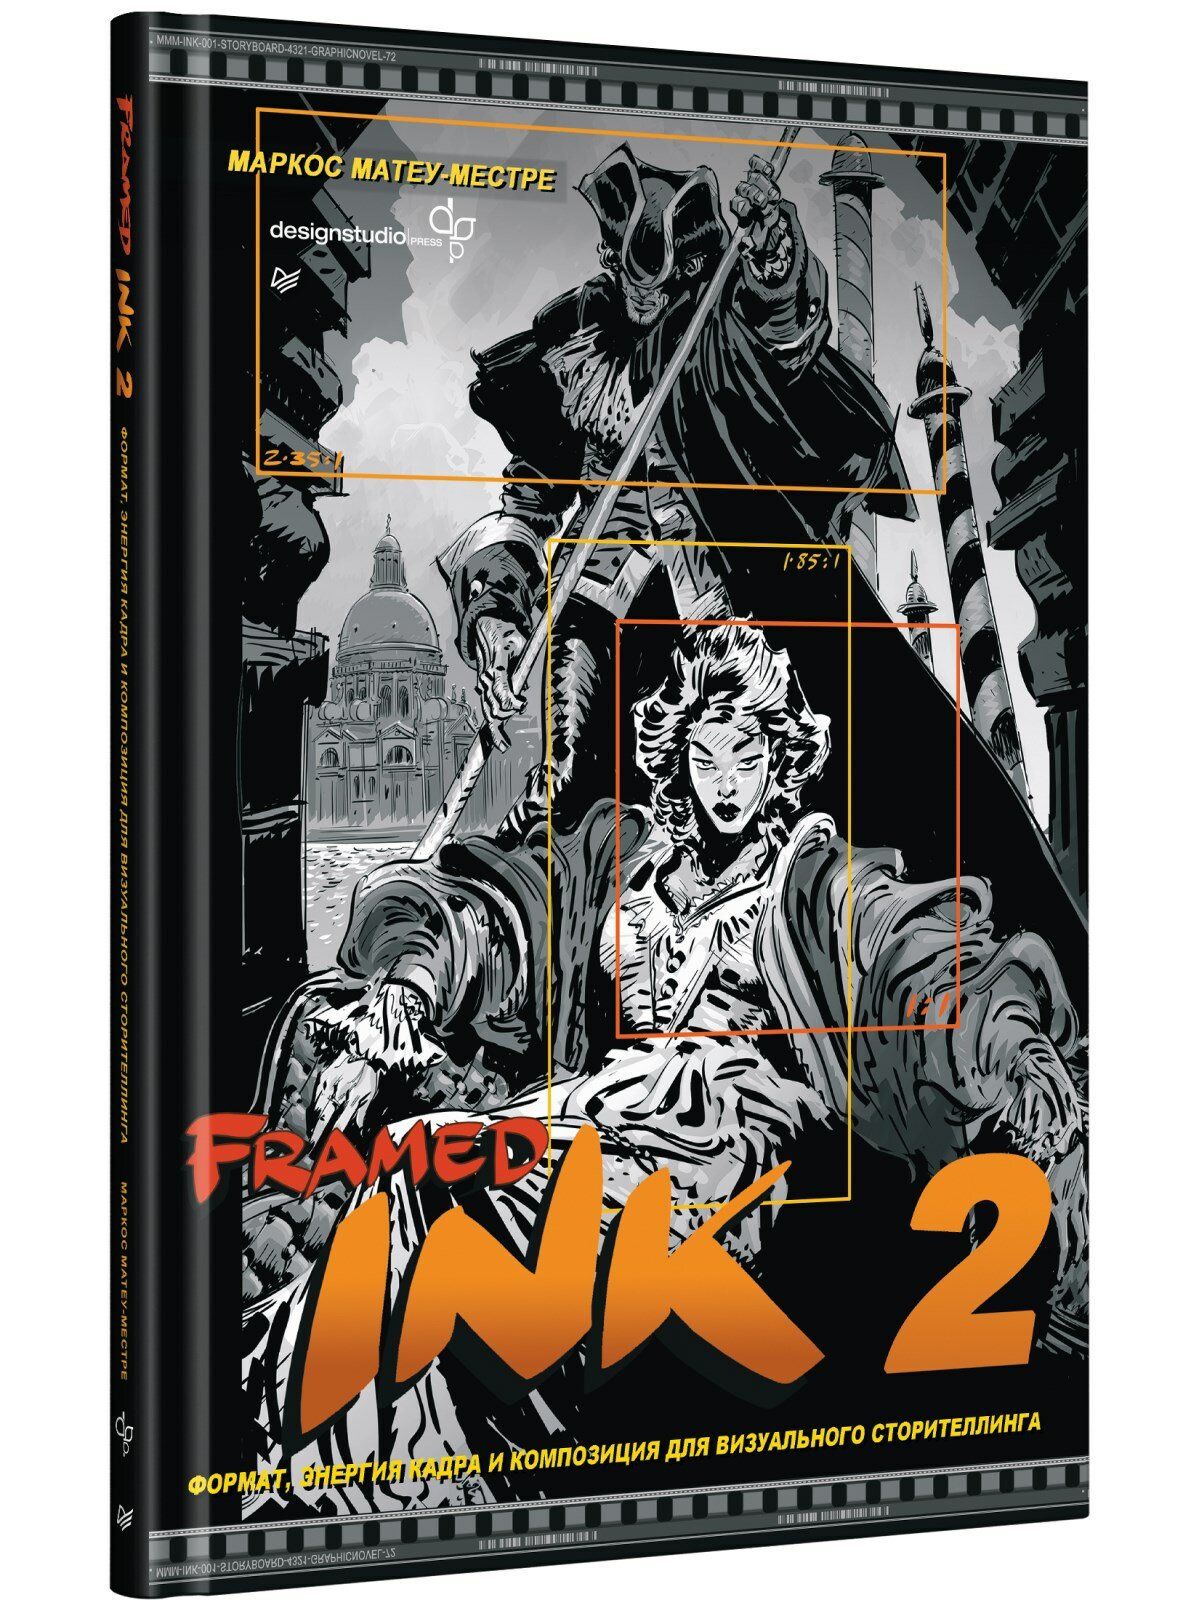 Framed Ink 2: Формат, энергия кадра и композиция для визуального сторителлинга